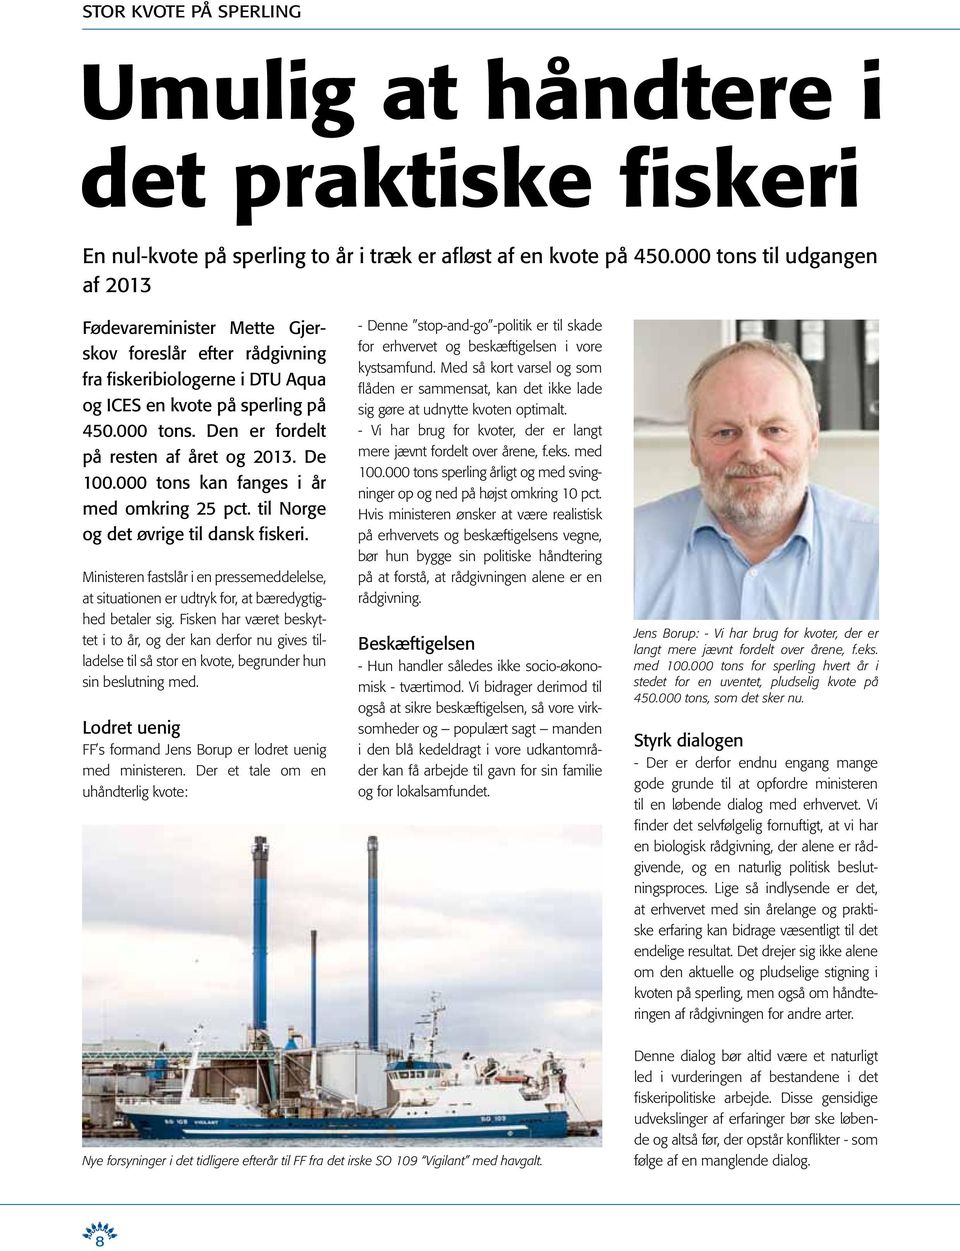 De 100.000 tons kan fanges i år med omkring 25 pct. til Norge og det øvrige til dansk fiskeri. Ministeren fastslår i en pressemed delelse, at situationen er udtryk for, at bæredygtighed betaler sig.